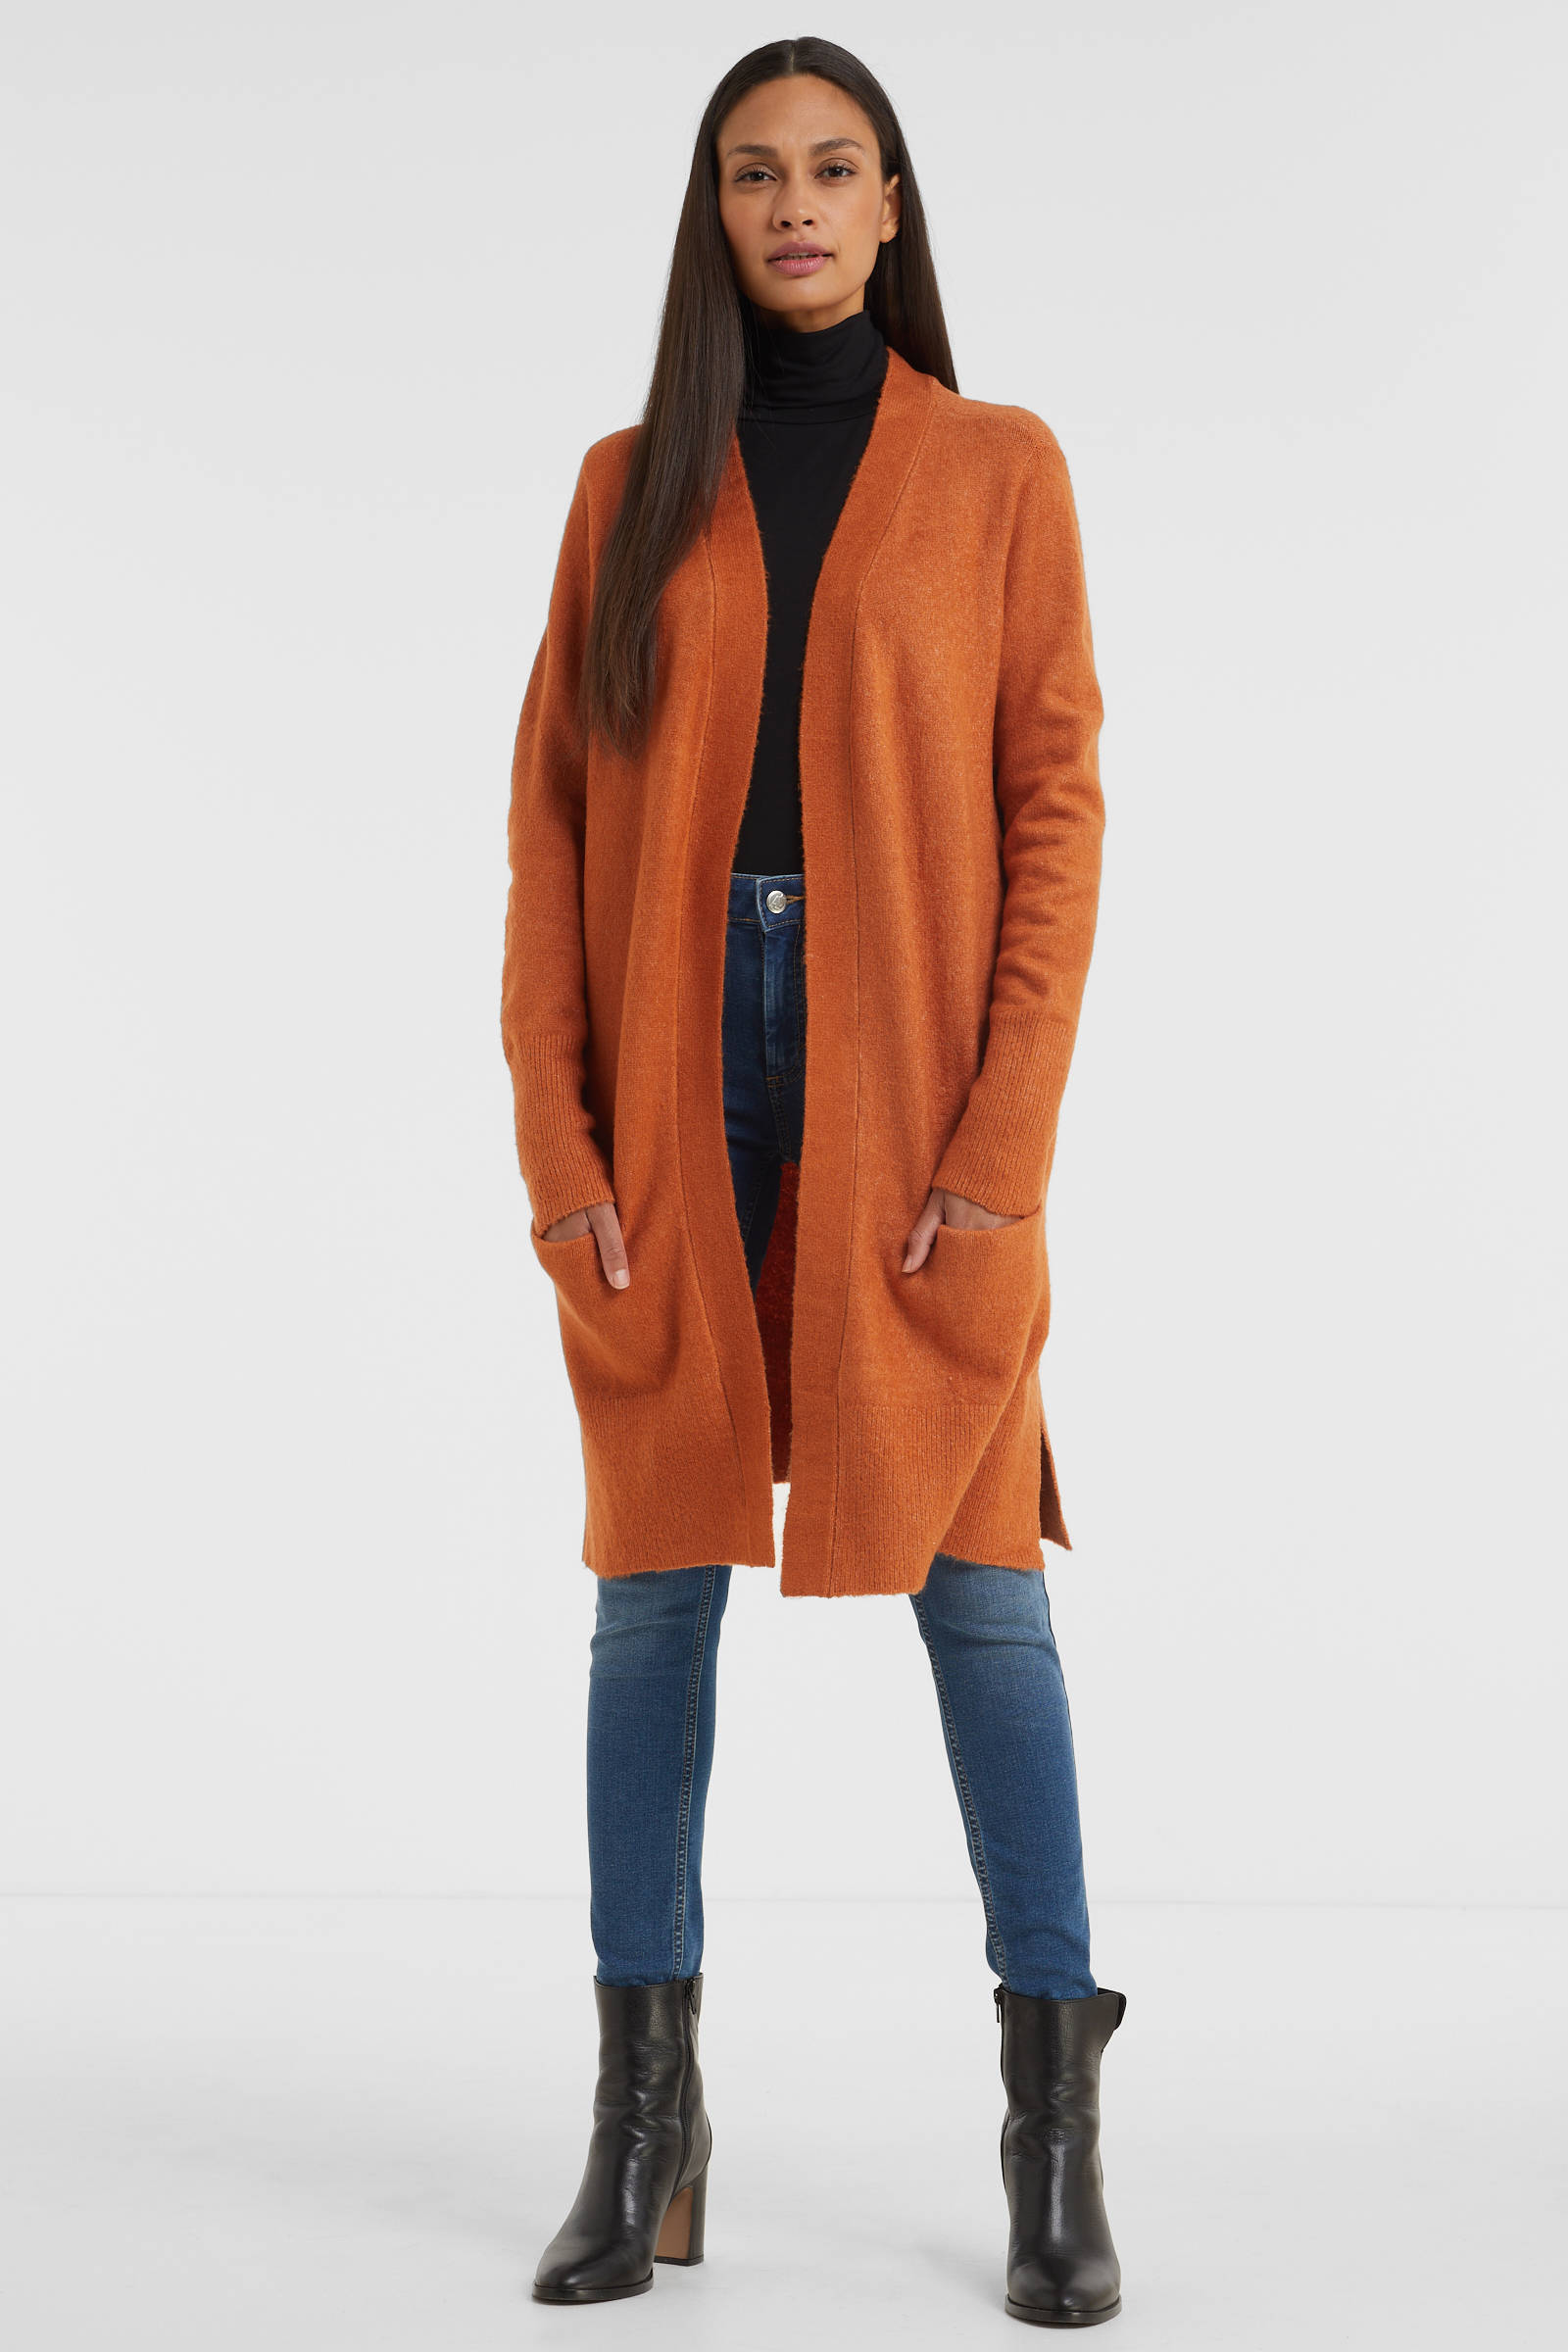 pingpong Omkeerbaar vest licht Oranje-bruin casual uitstraling Mode Vesten Omkeerbare vesten 